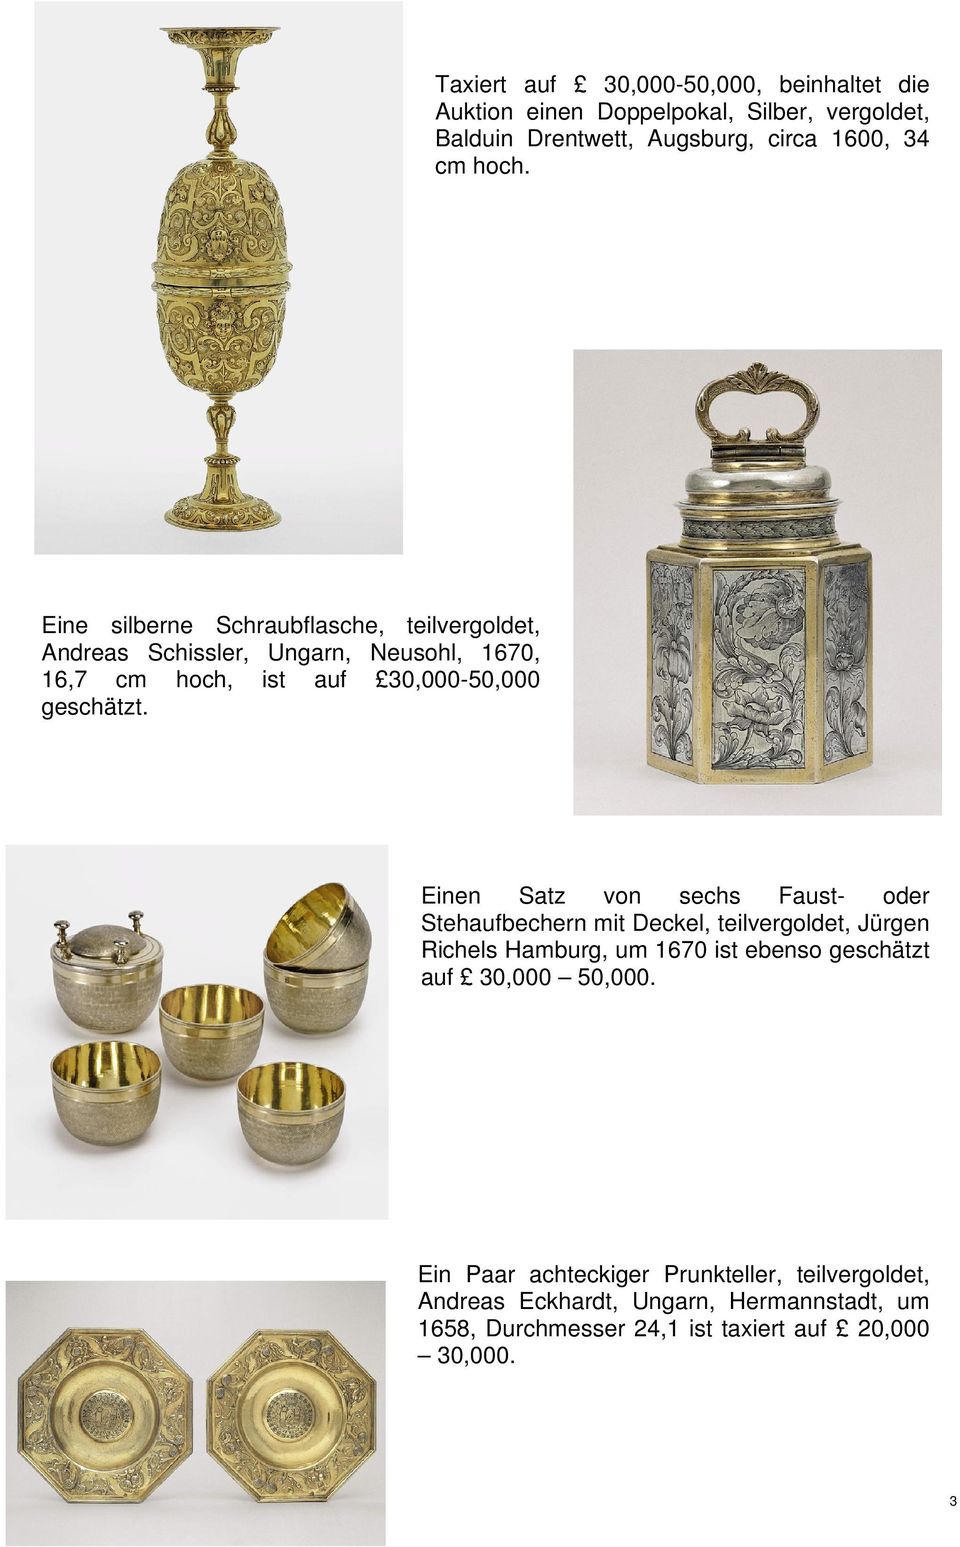 Einen Satz von sechs Faust- oder Stehaufbechern mit Deckel, teilvergoldet, Jürgen Richels Hamburg, um 1670 ist ebenso geschätzt auf 30,000